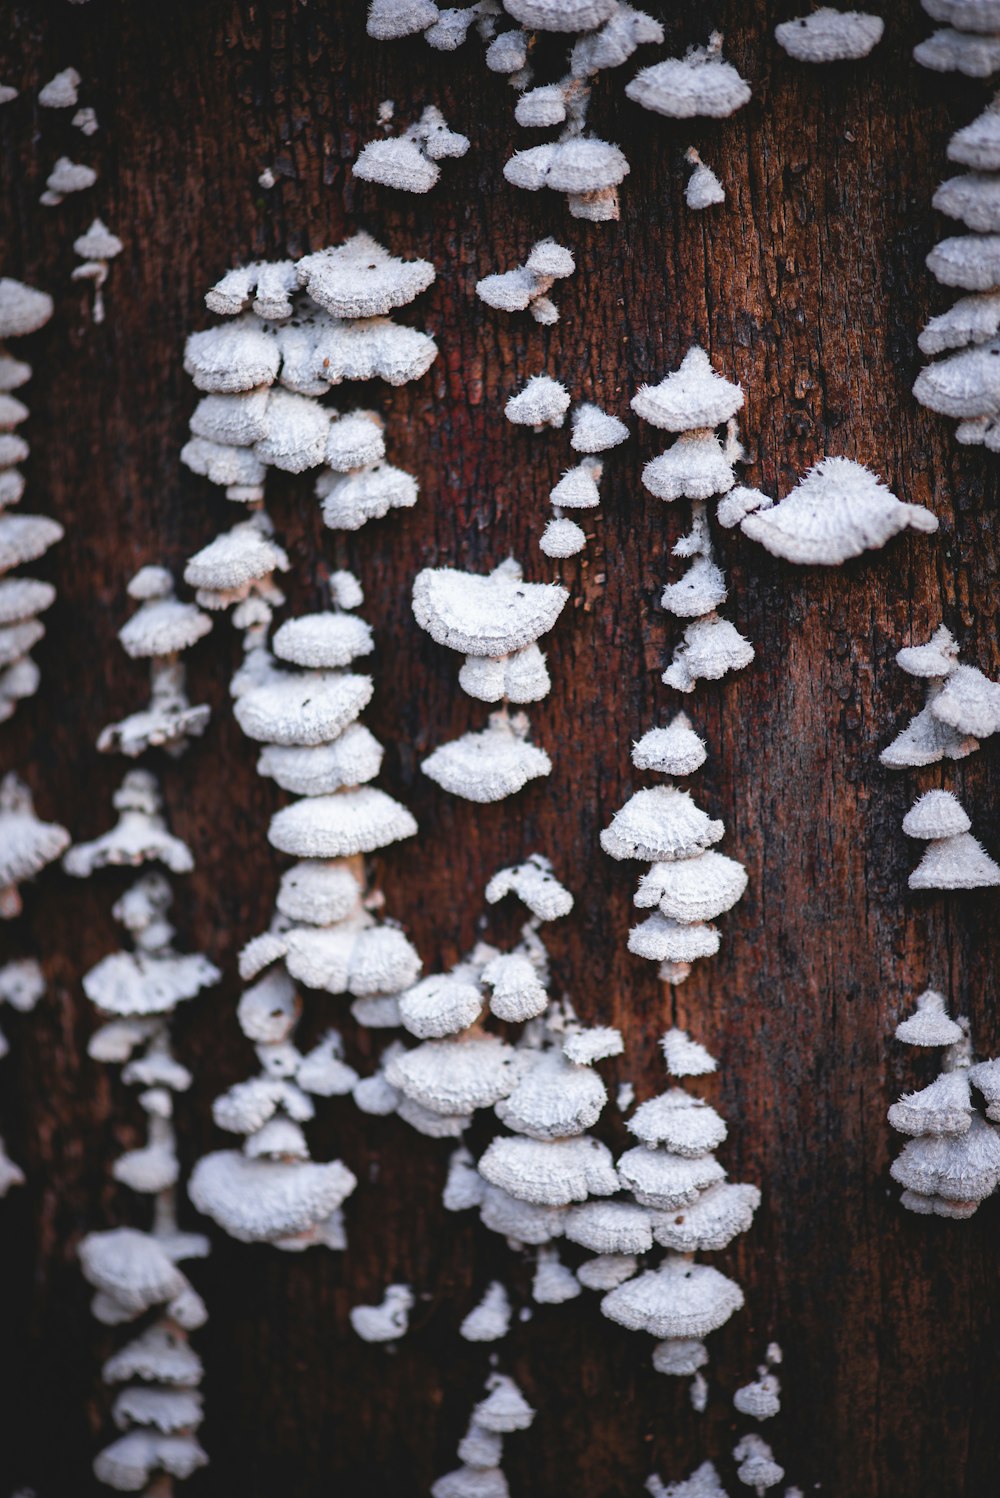 white fungi on tree